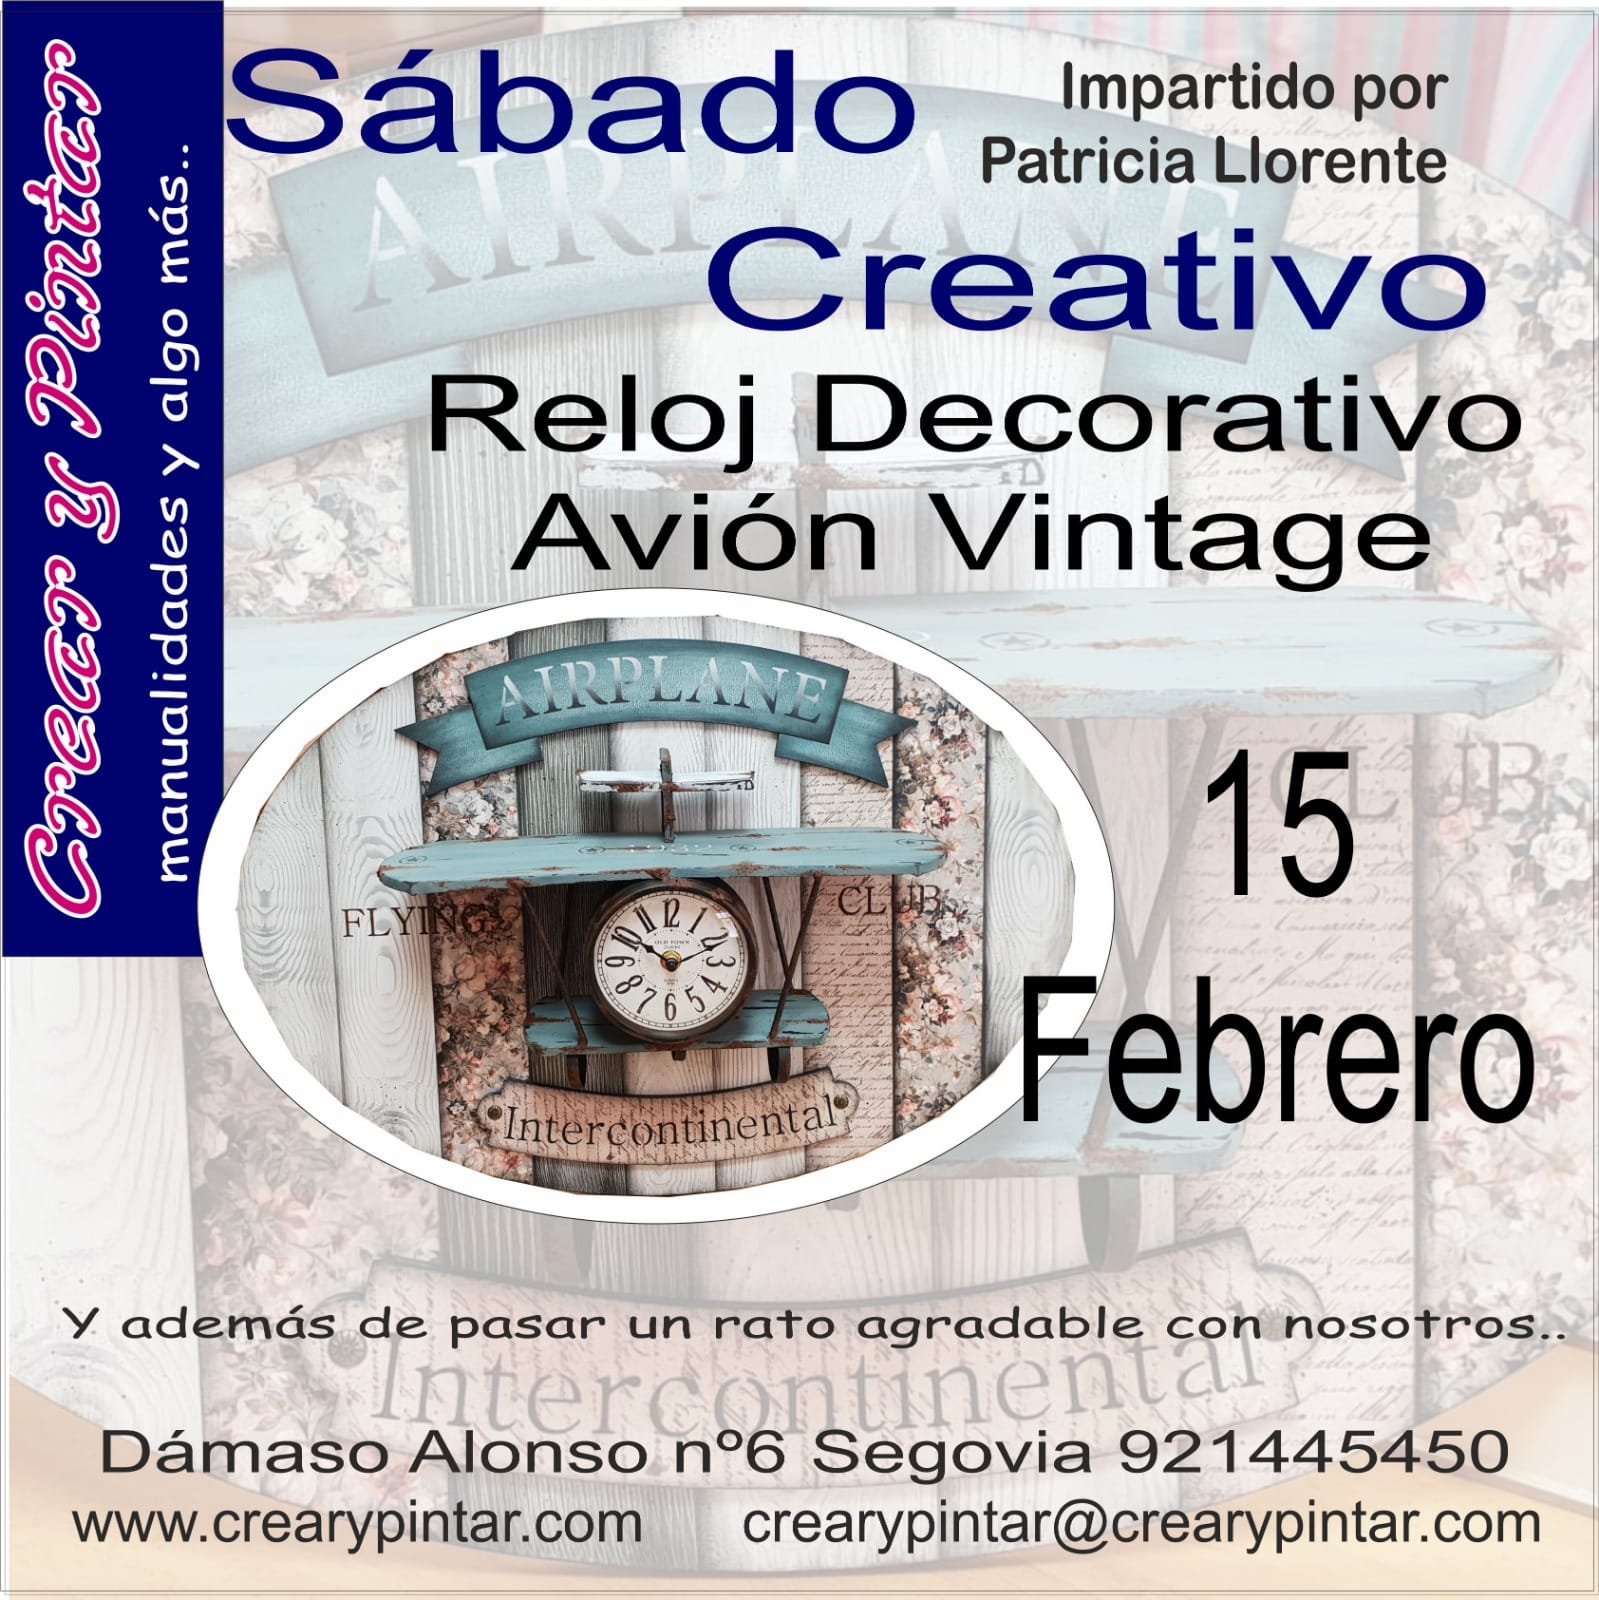 Curso: Reloj decorativo avión vintage – Sábado creativo